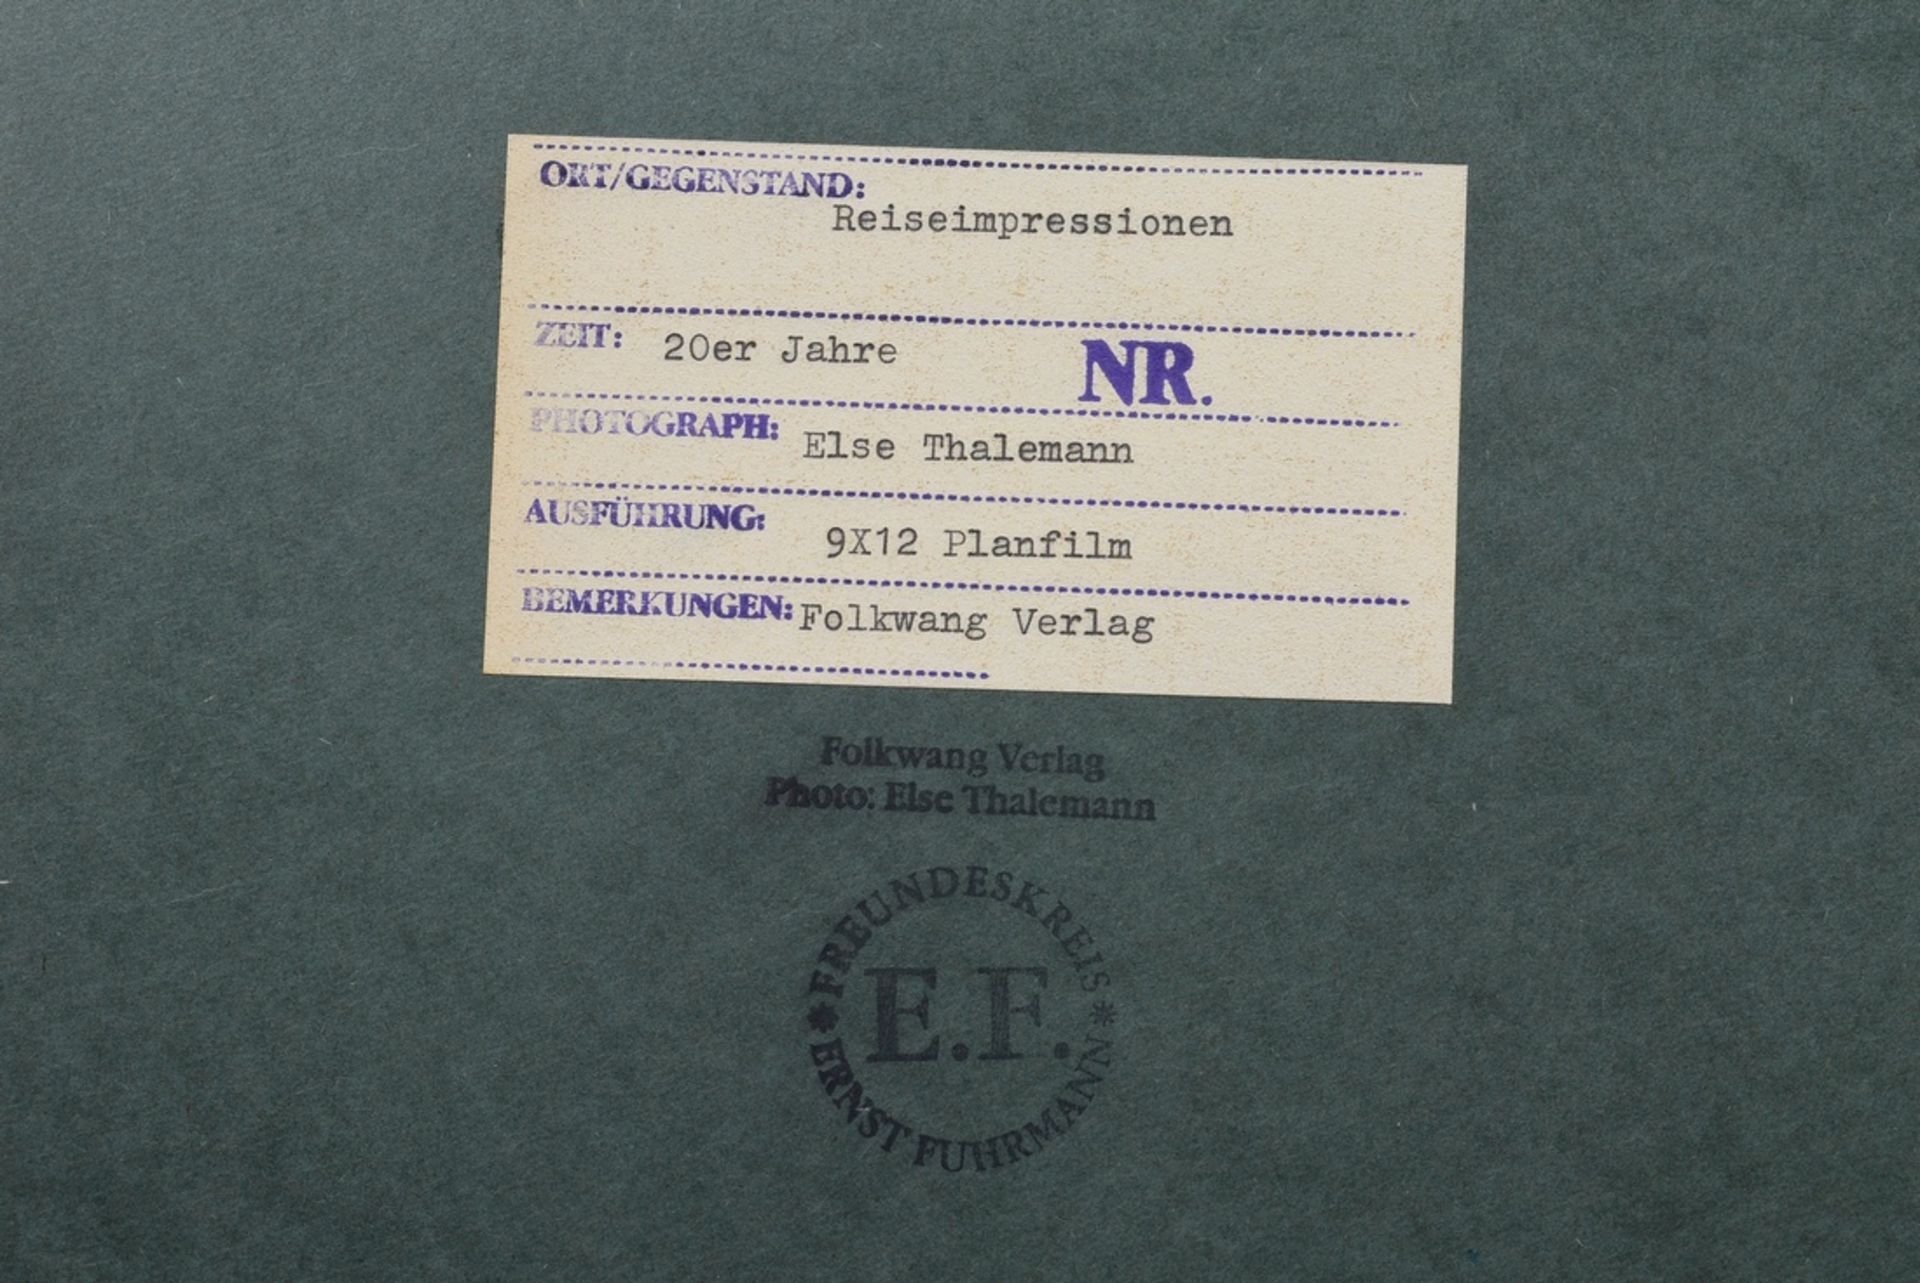 Thalemann, Else (1901-1985) "Reiseimpressionen, Mutter und Kind", Fotografie auf Karton montiert, v - Bild 3 aus 3